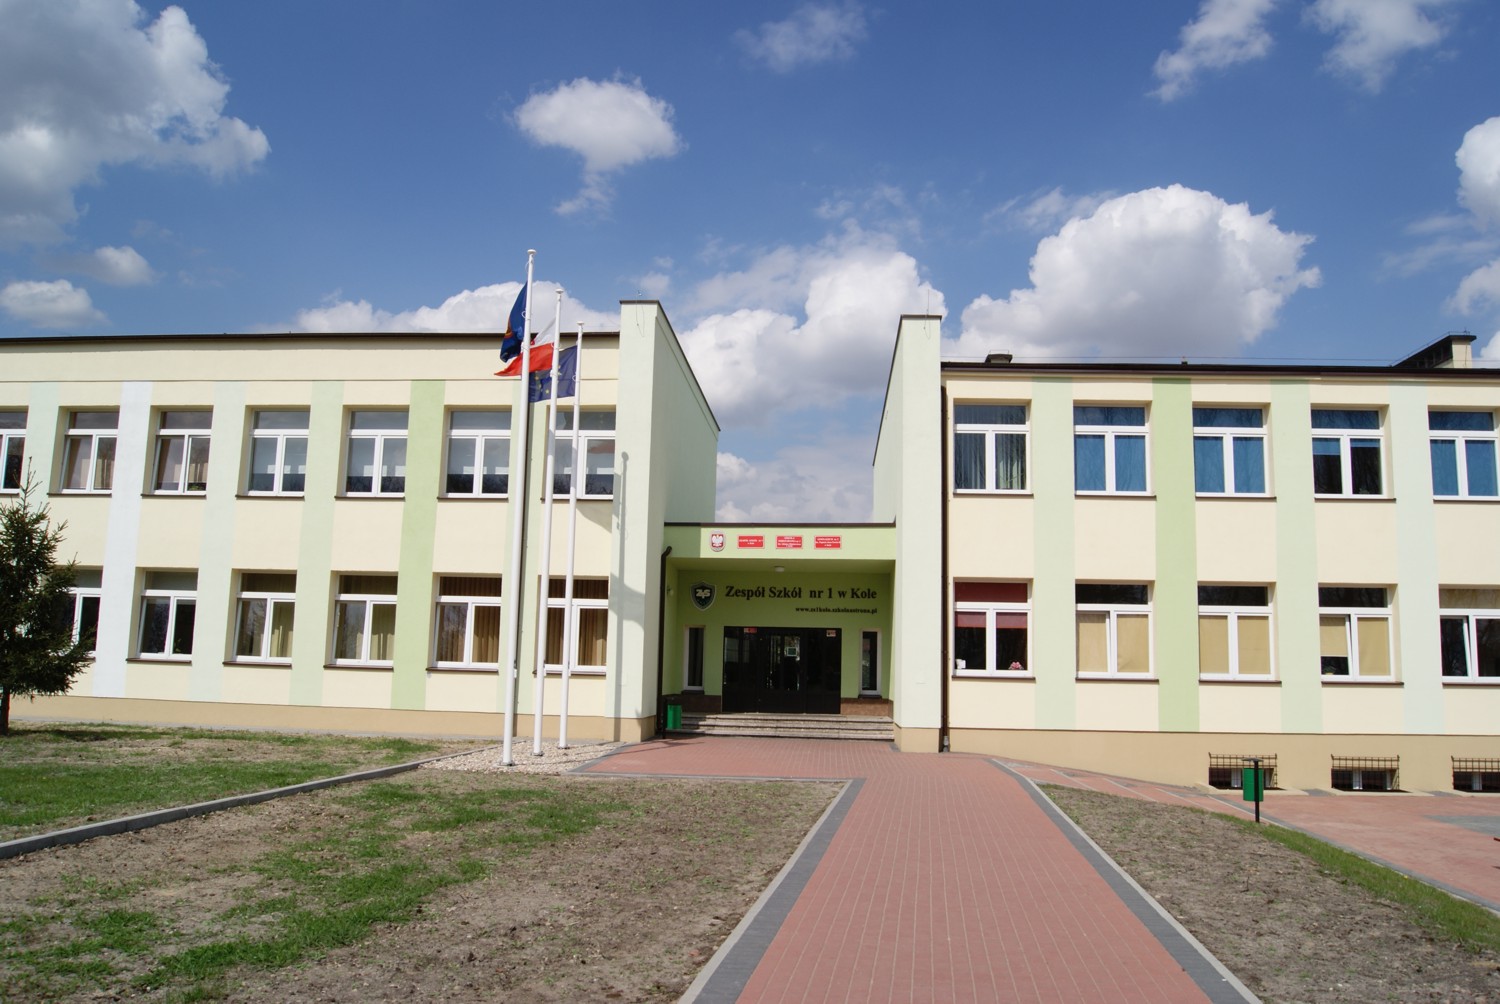 Szkoła Podstawowa Nr 1 Sulejów Szkoły podstawowe - Miasto Koło - oficjalny portal informacyjny